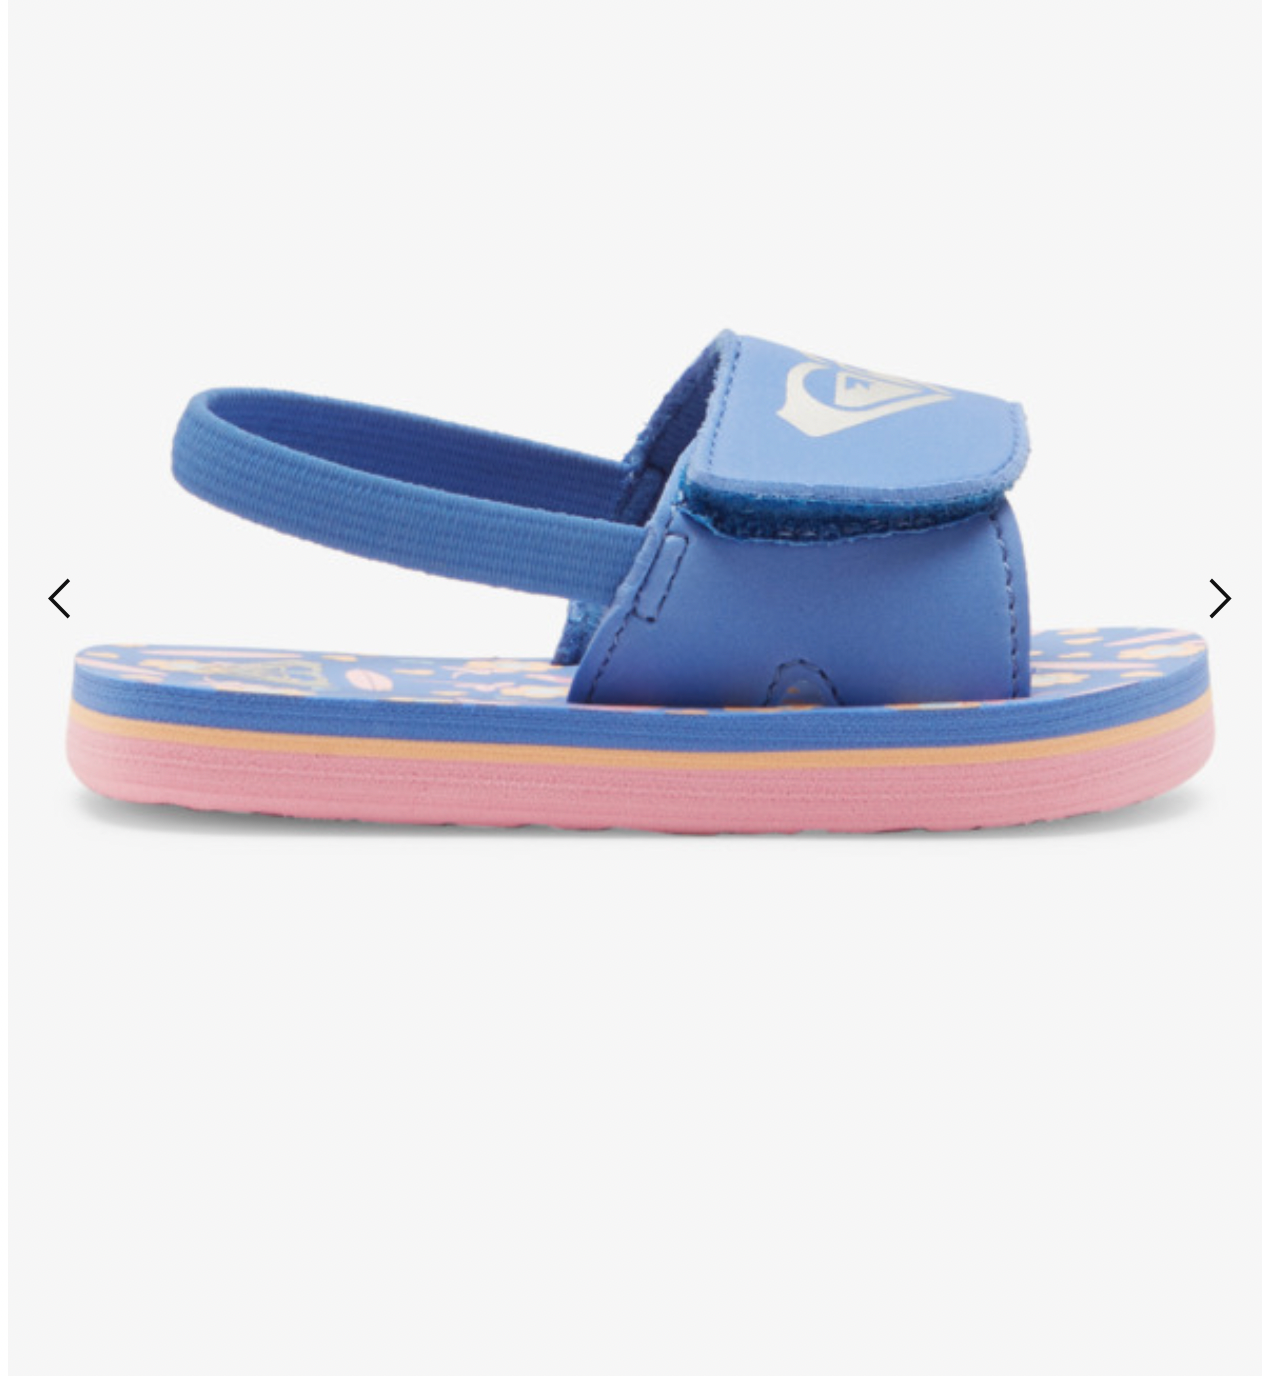 ROXY Finn - Sandals for Girls